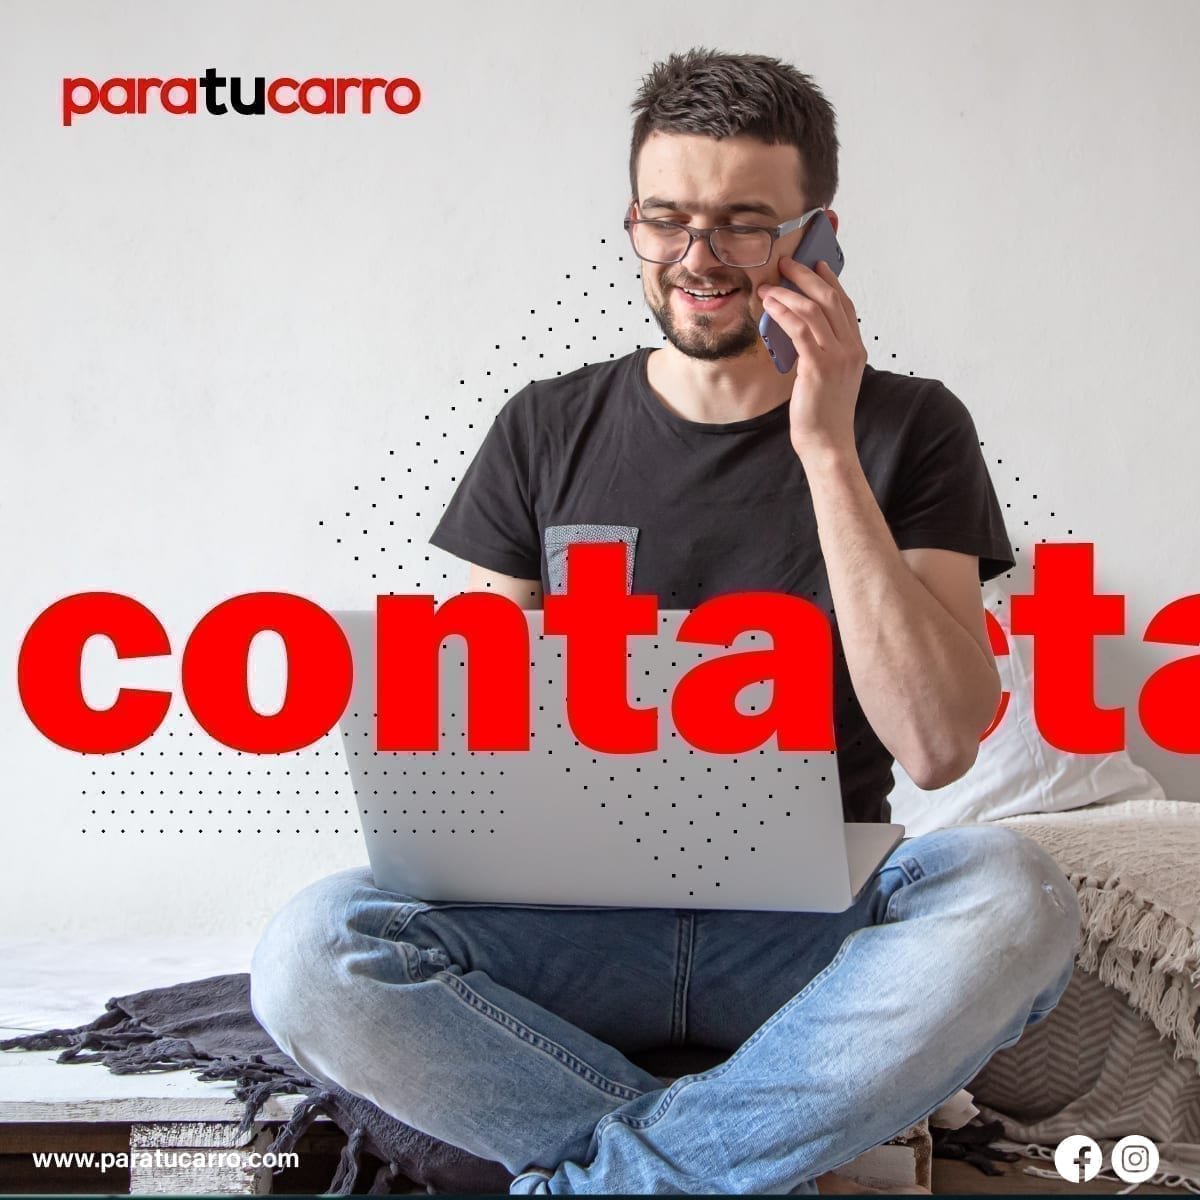 paratucarro.com